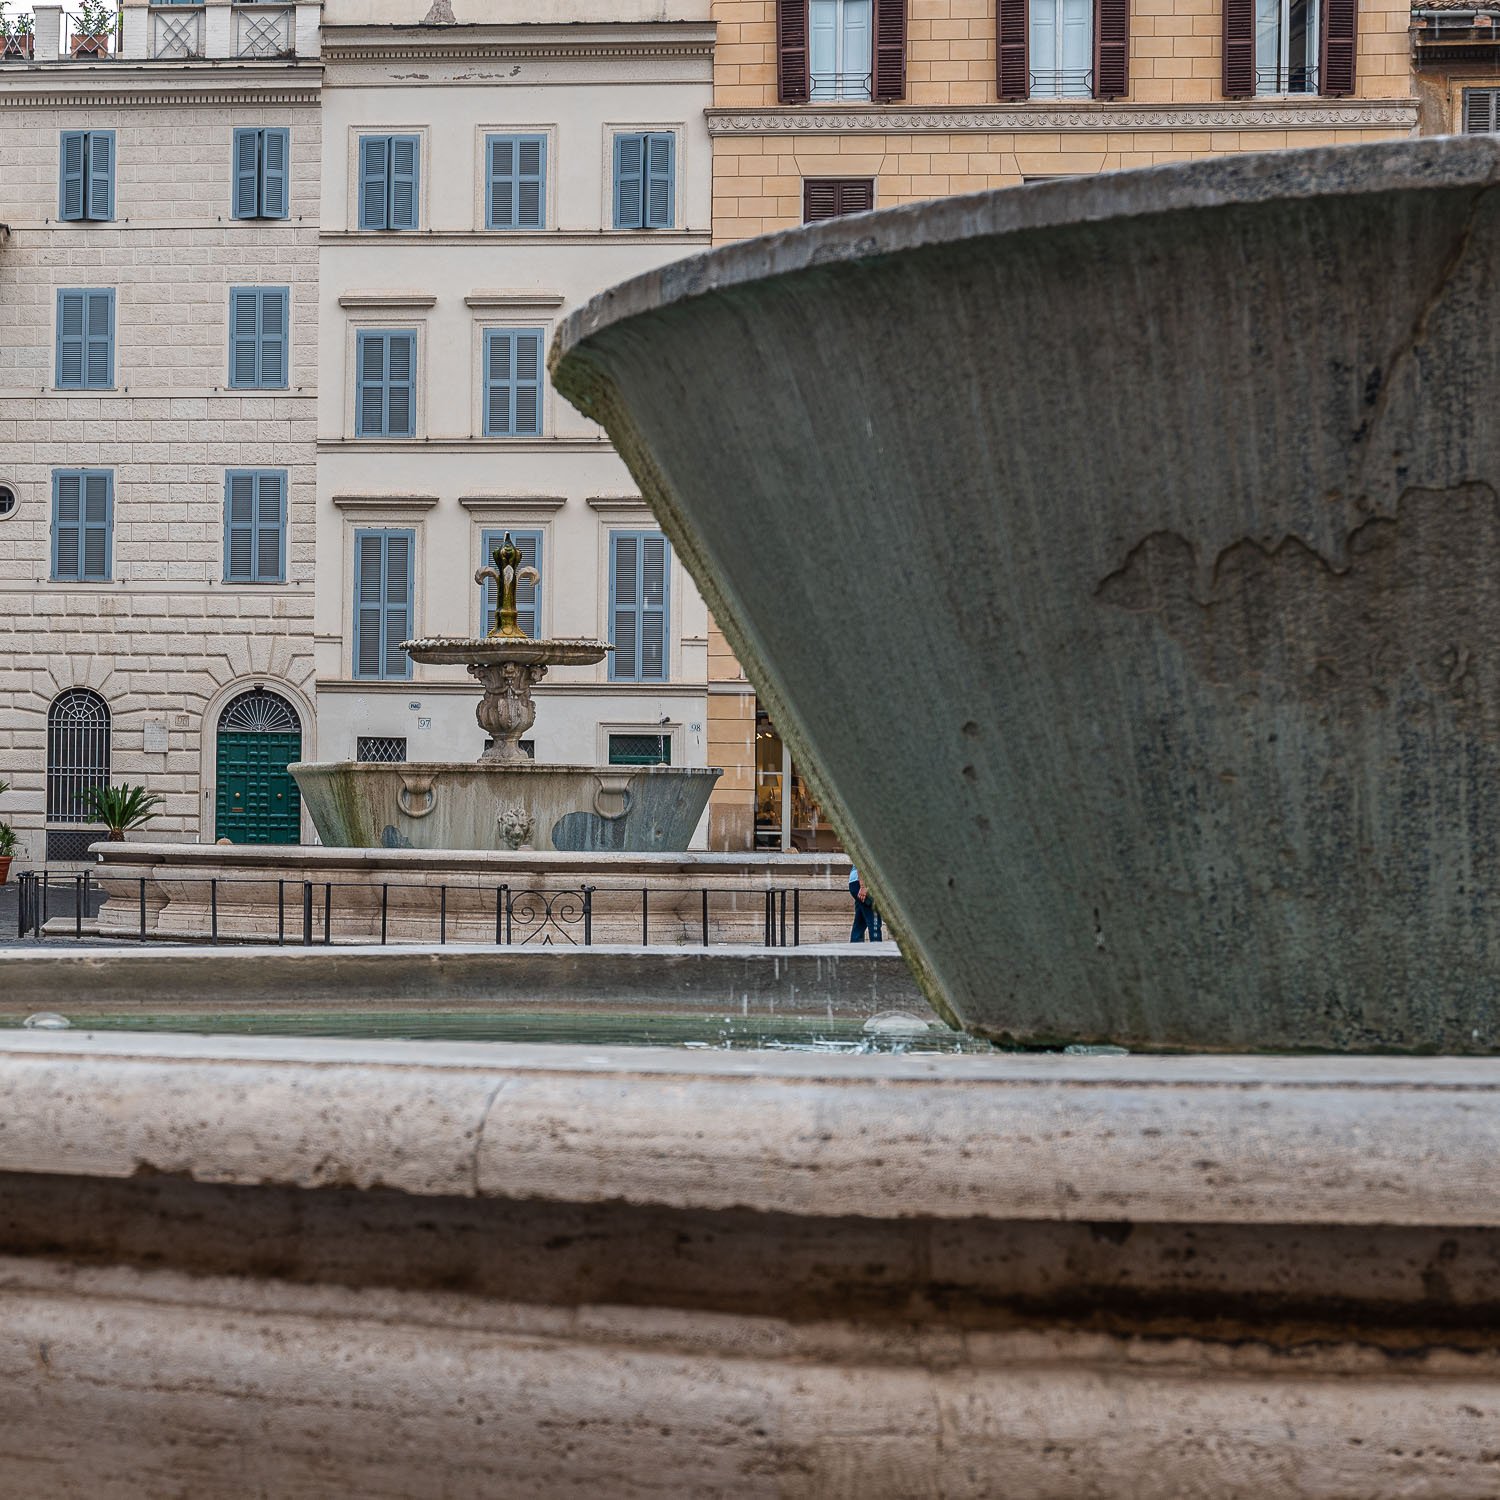 Ancient Roman Fountains - Piazza Farnese Fountain